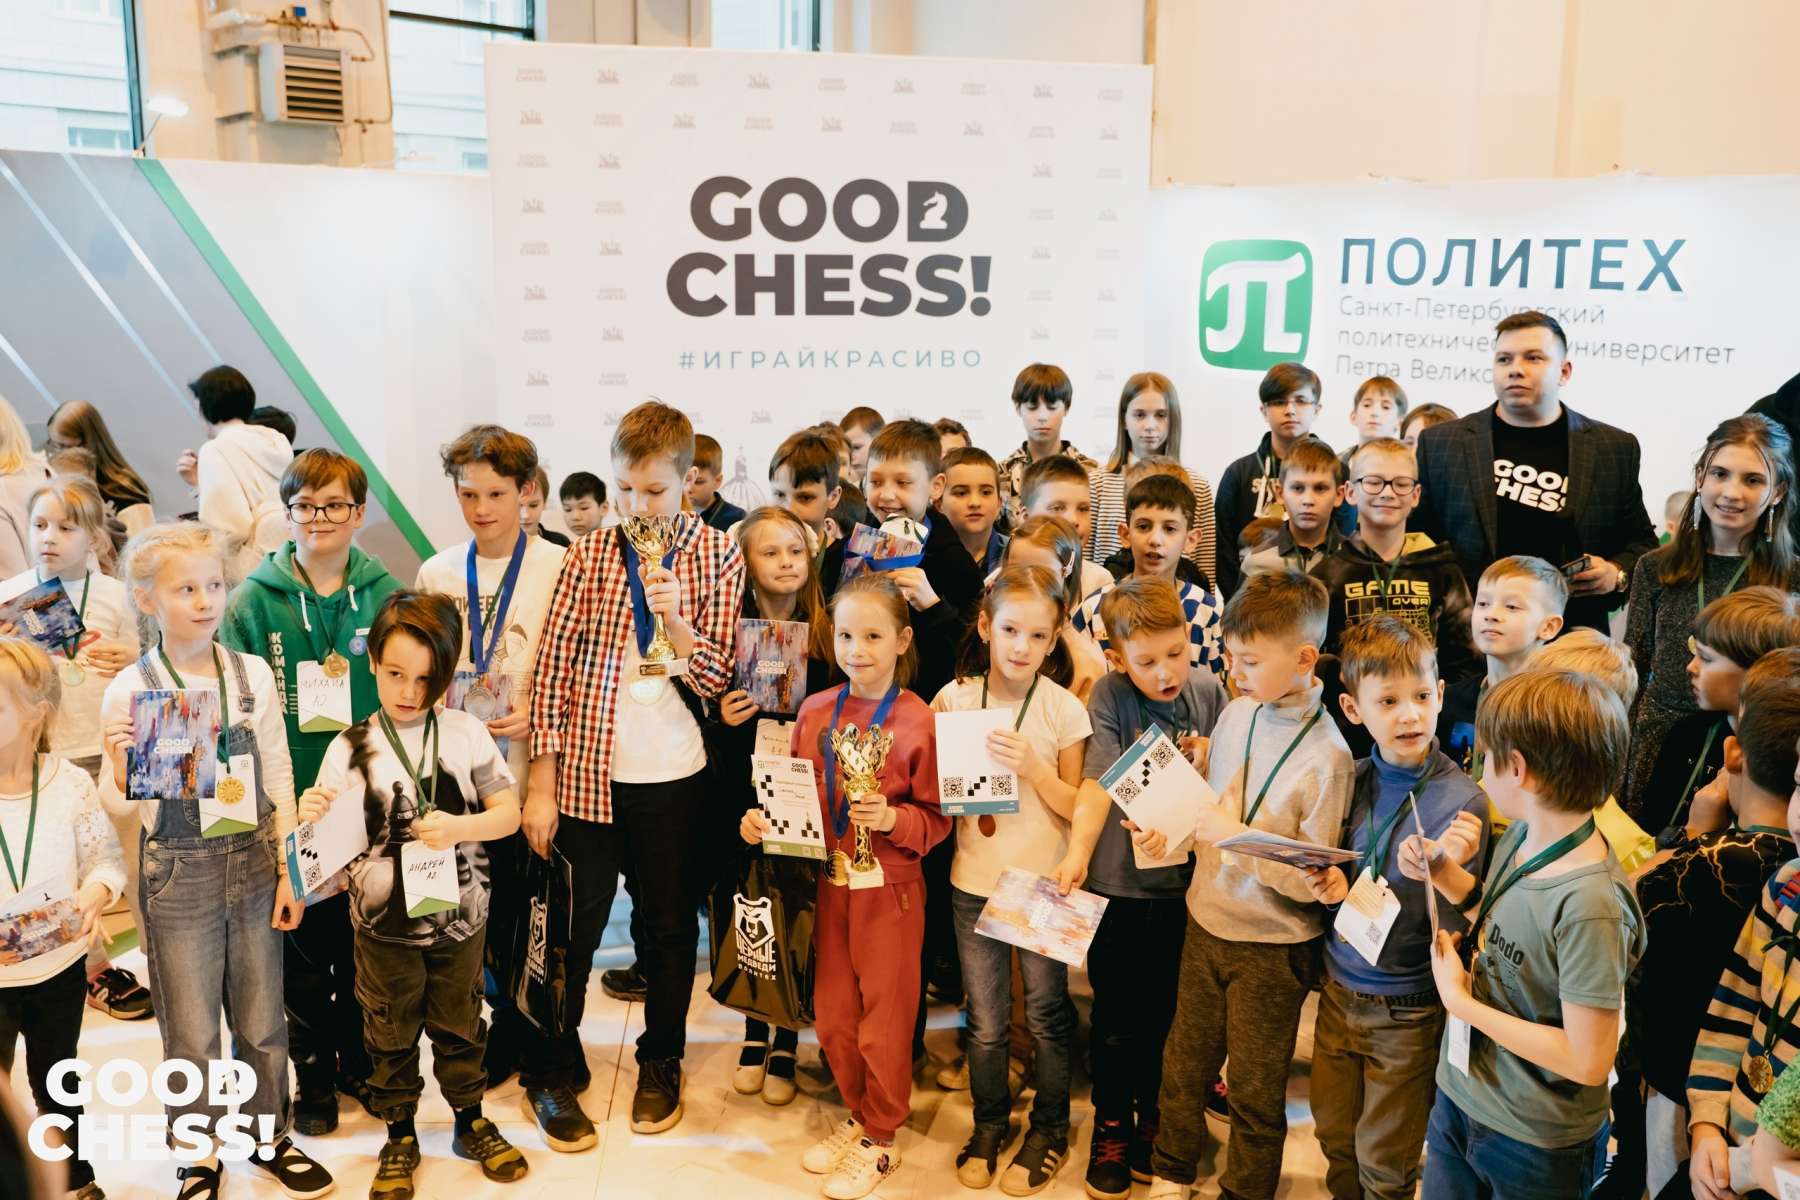 Шахматный фестиваль GOOD CHESS в Политехе!